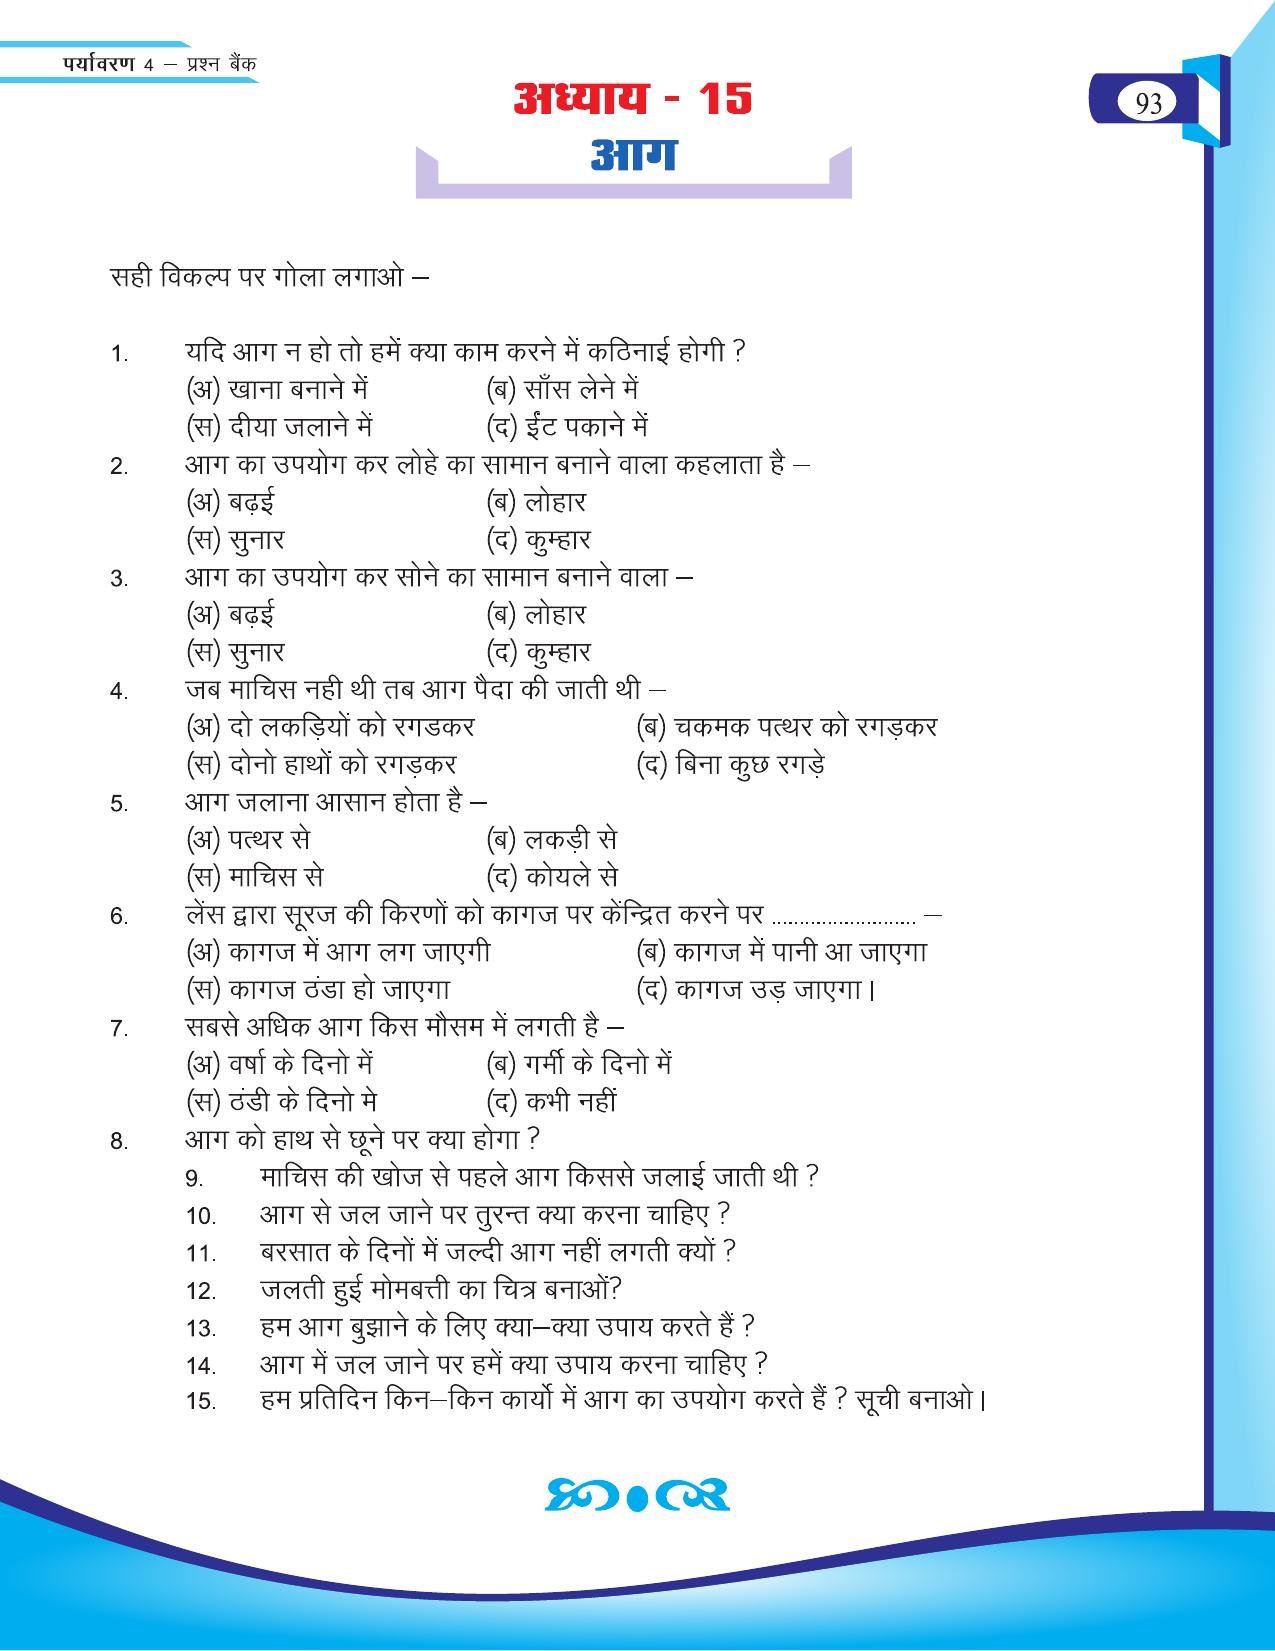 Chhattisgarh Board Class 4 EVS Question Bank 2015-16 - Page 22